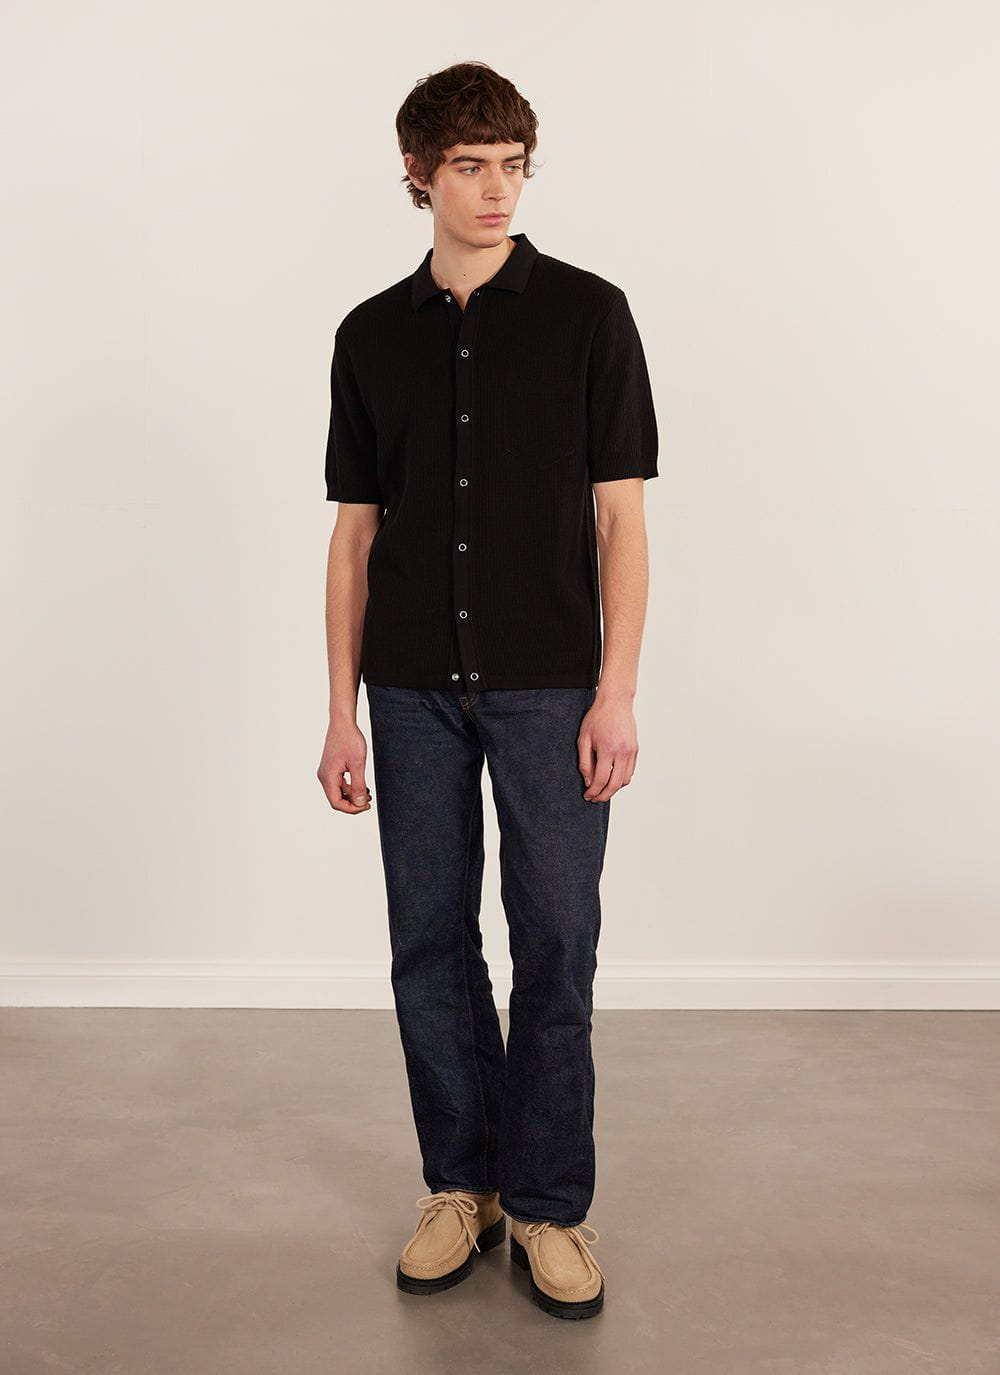 Men's Cuban Collar Shirt | Knitted | Short Sleeve | Black